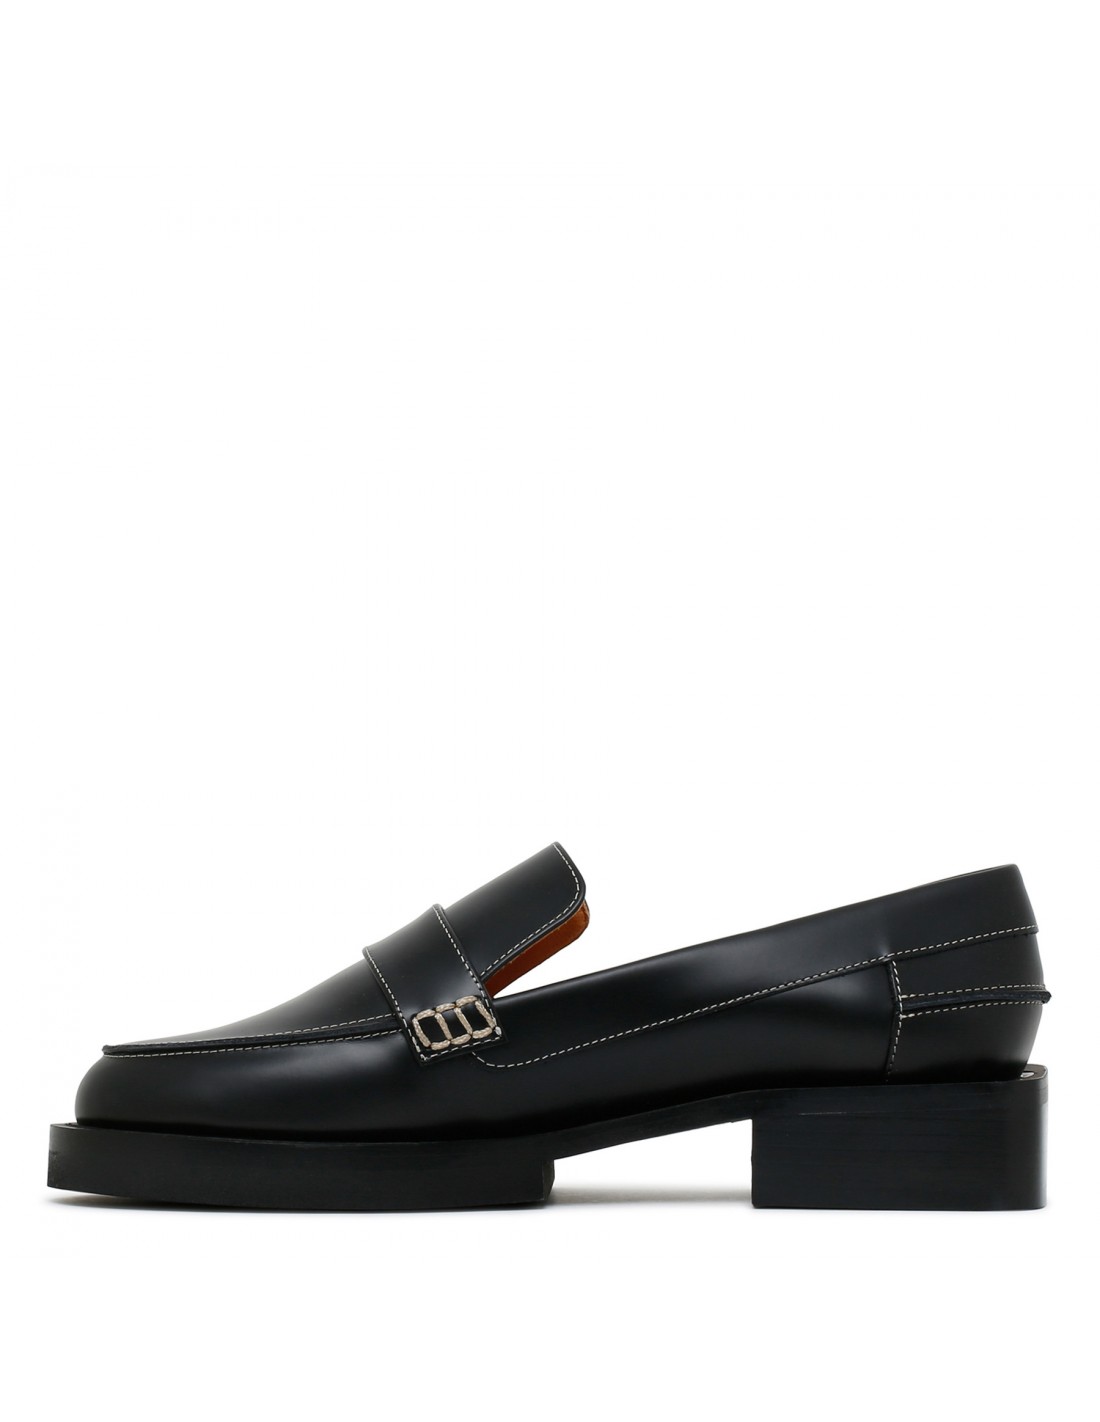 Black embellished loafers